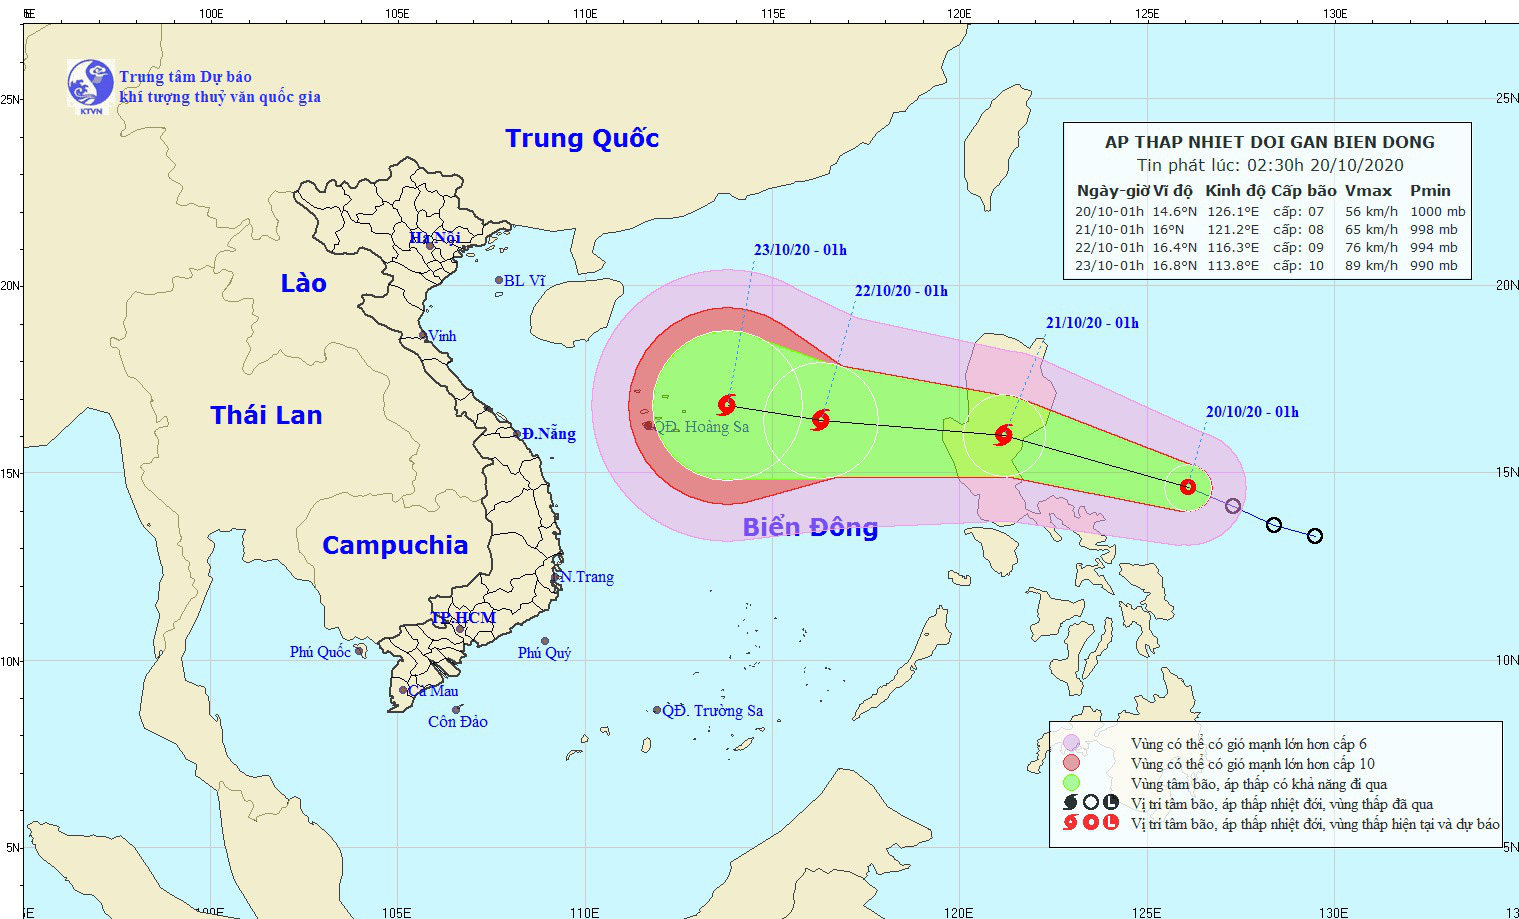 Biển Đông sắp đón bão số 8, cảnh báo thông tin giả mạo về cường độ của bão - Ảnh 1.